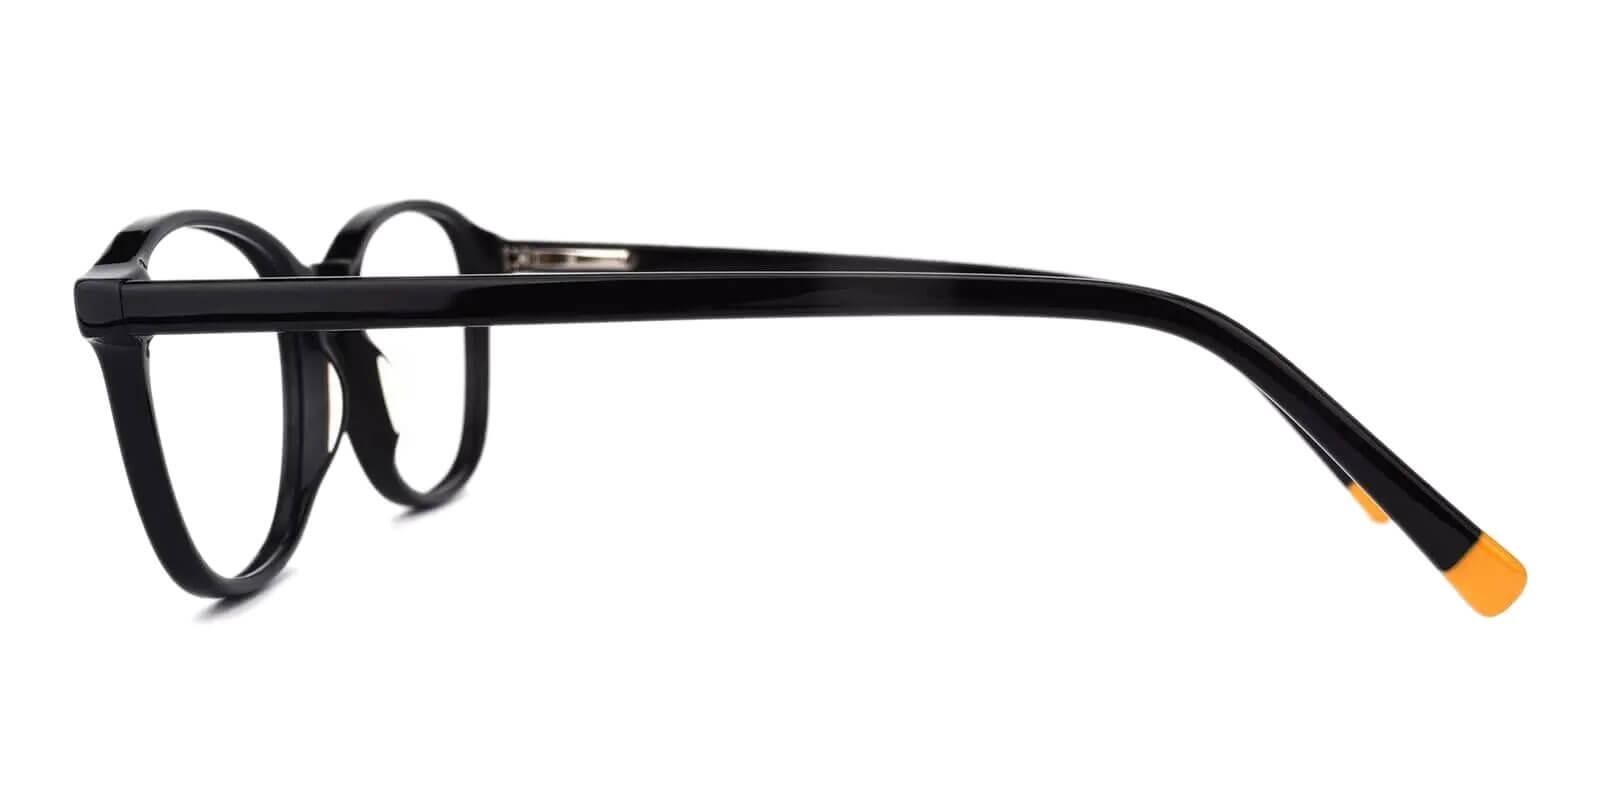 Brunei Black Acetate Eyeglasses , SpringHinges , UniversalBridgeFit Frames from ABBE Glasses